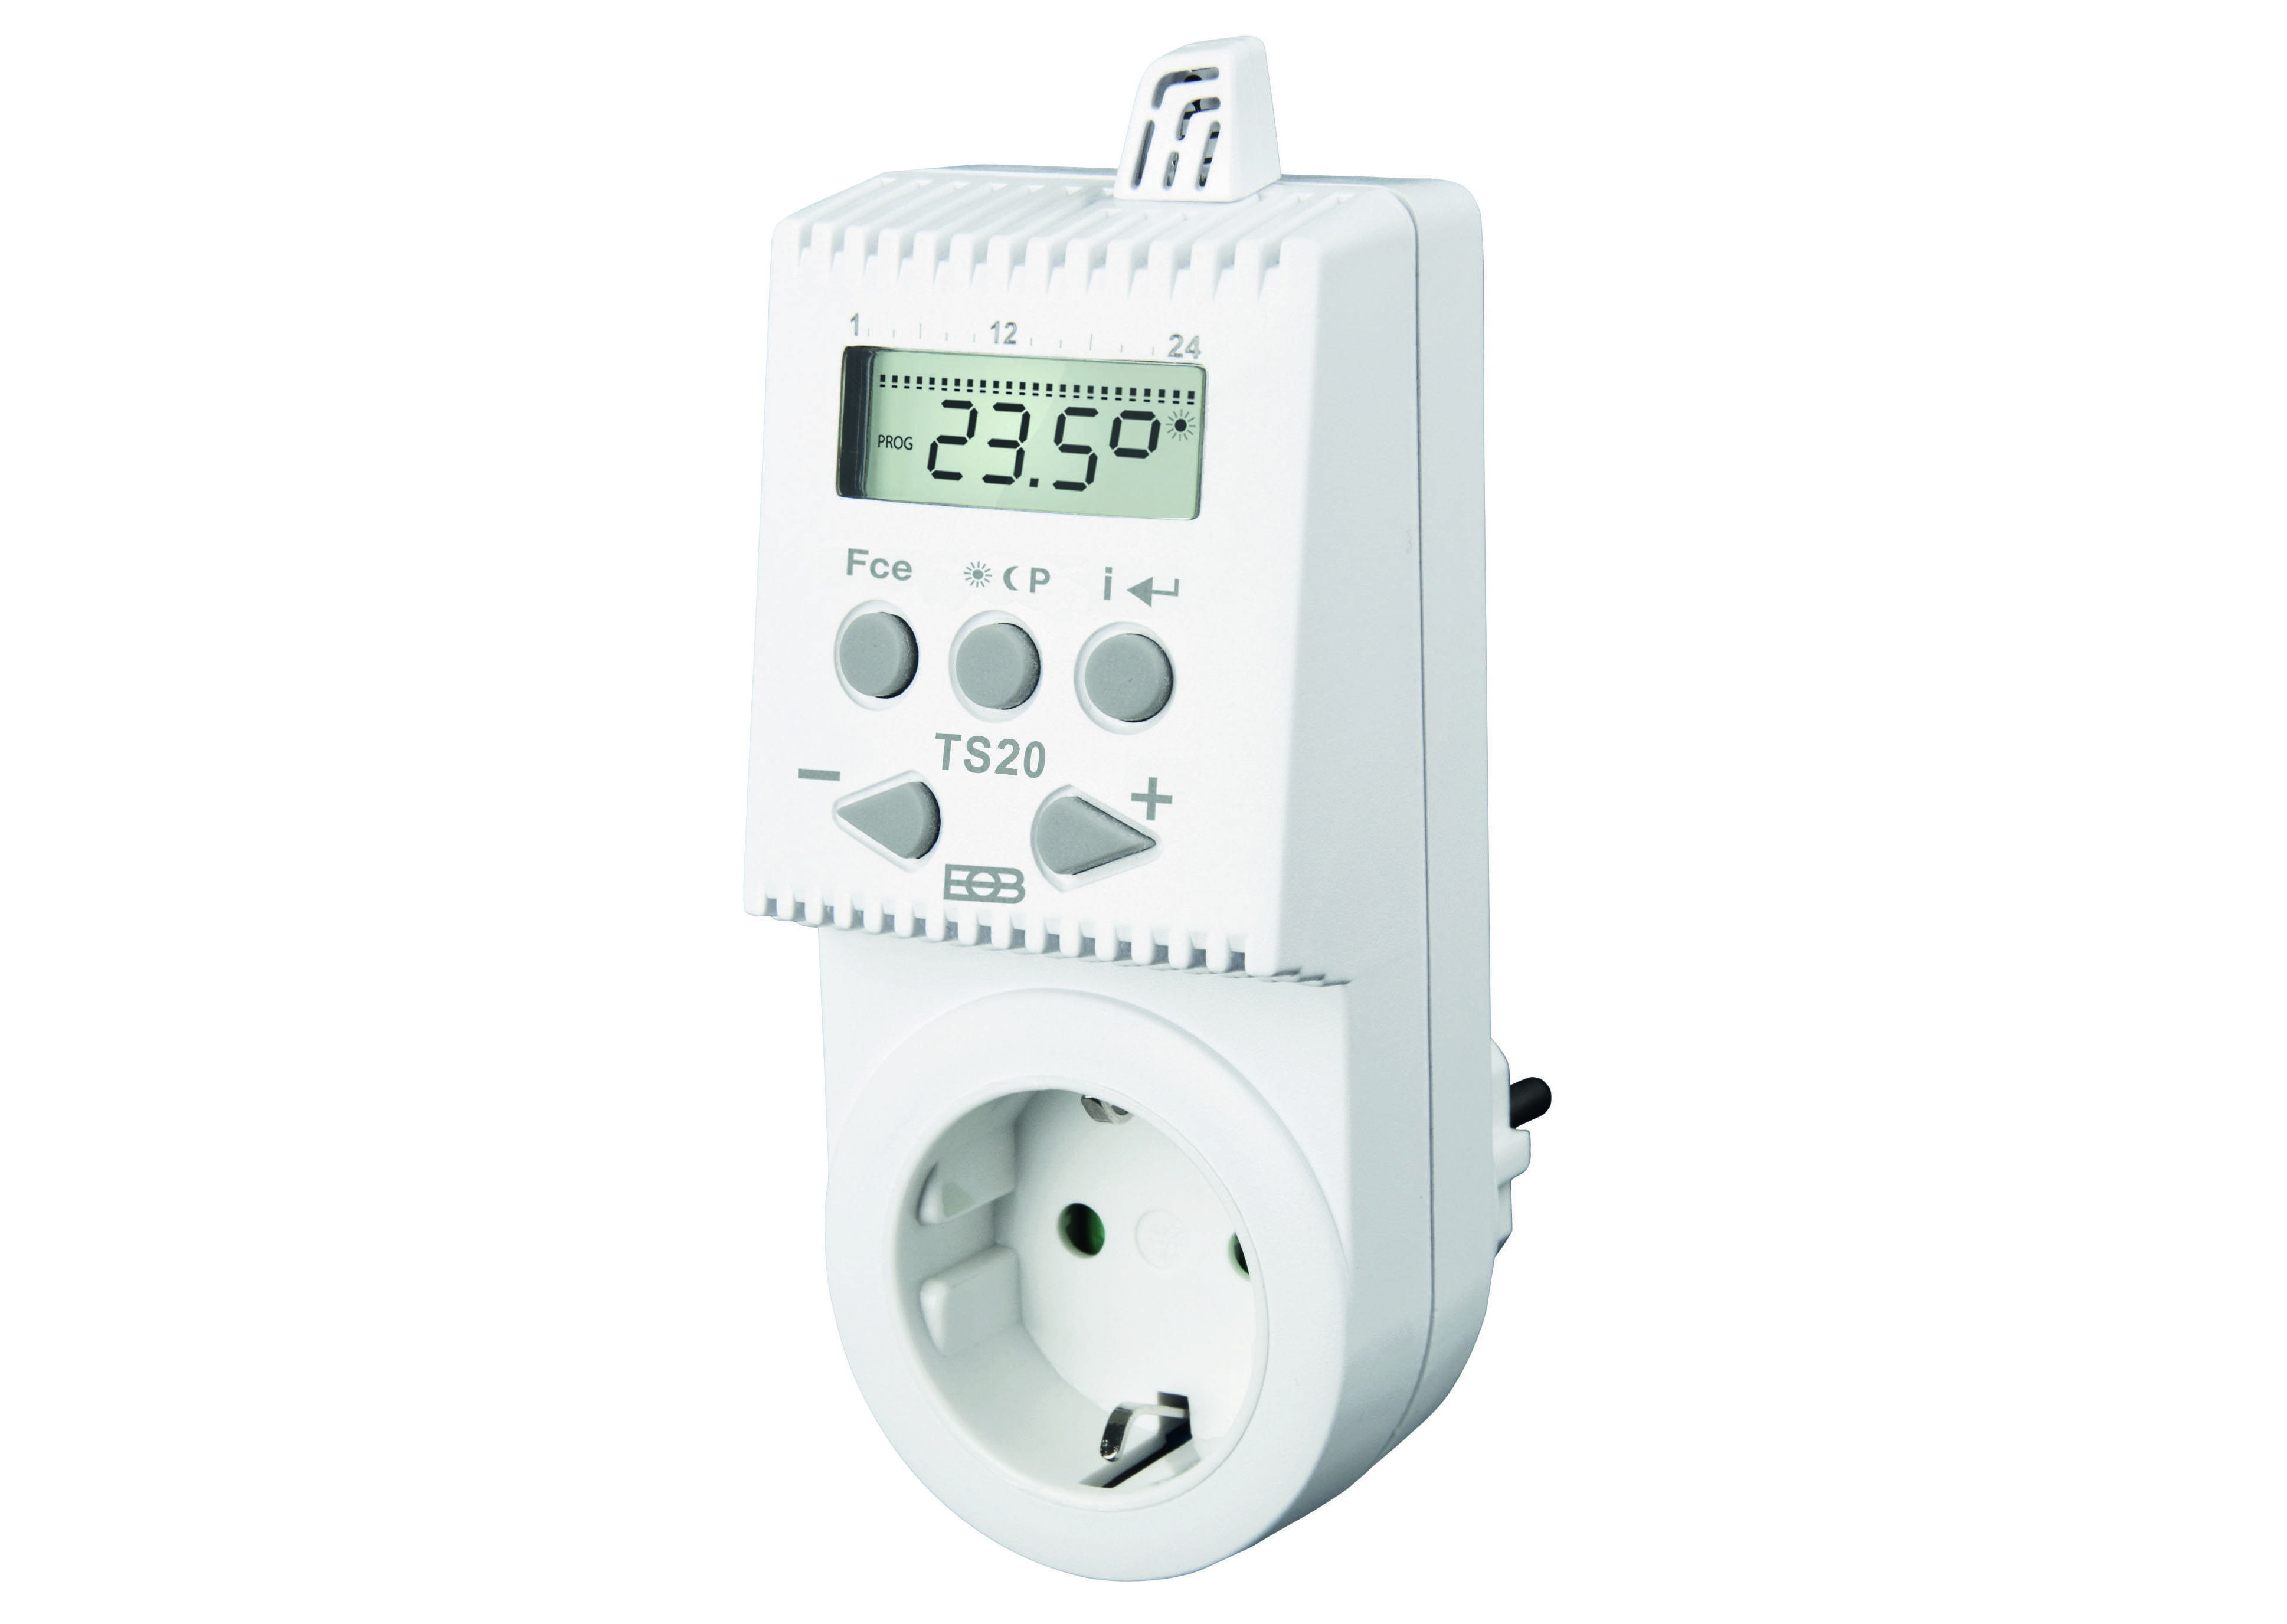 Терморегулятор в розетку для бытовых обогревателей - советы по выбору, обзор основных параметров и дополнительных функций